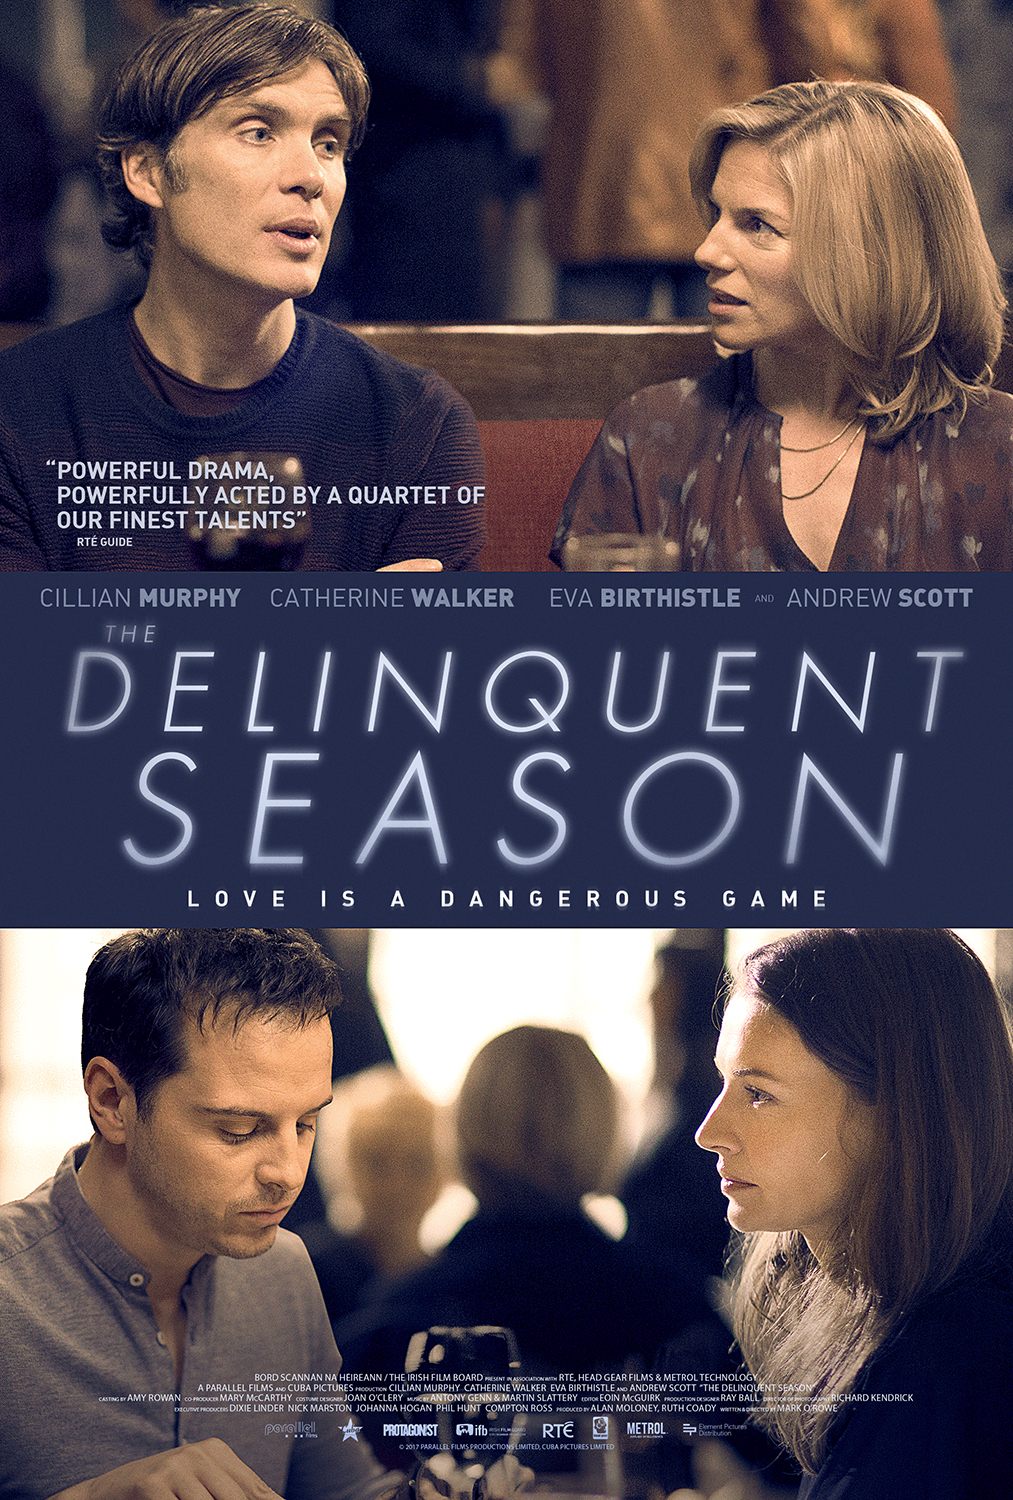 Nonton film The Delinquent Season layarkaca21 indoxx1 ganool online streaming terbaru